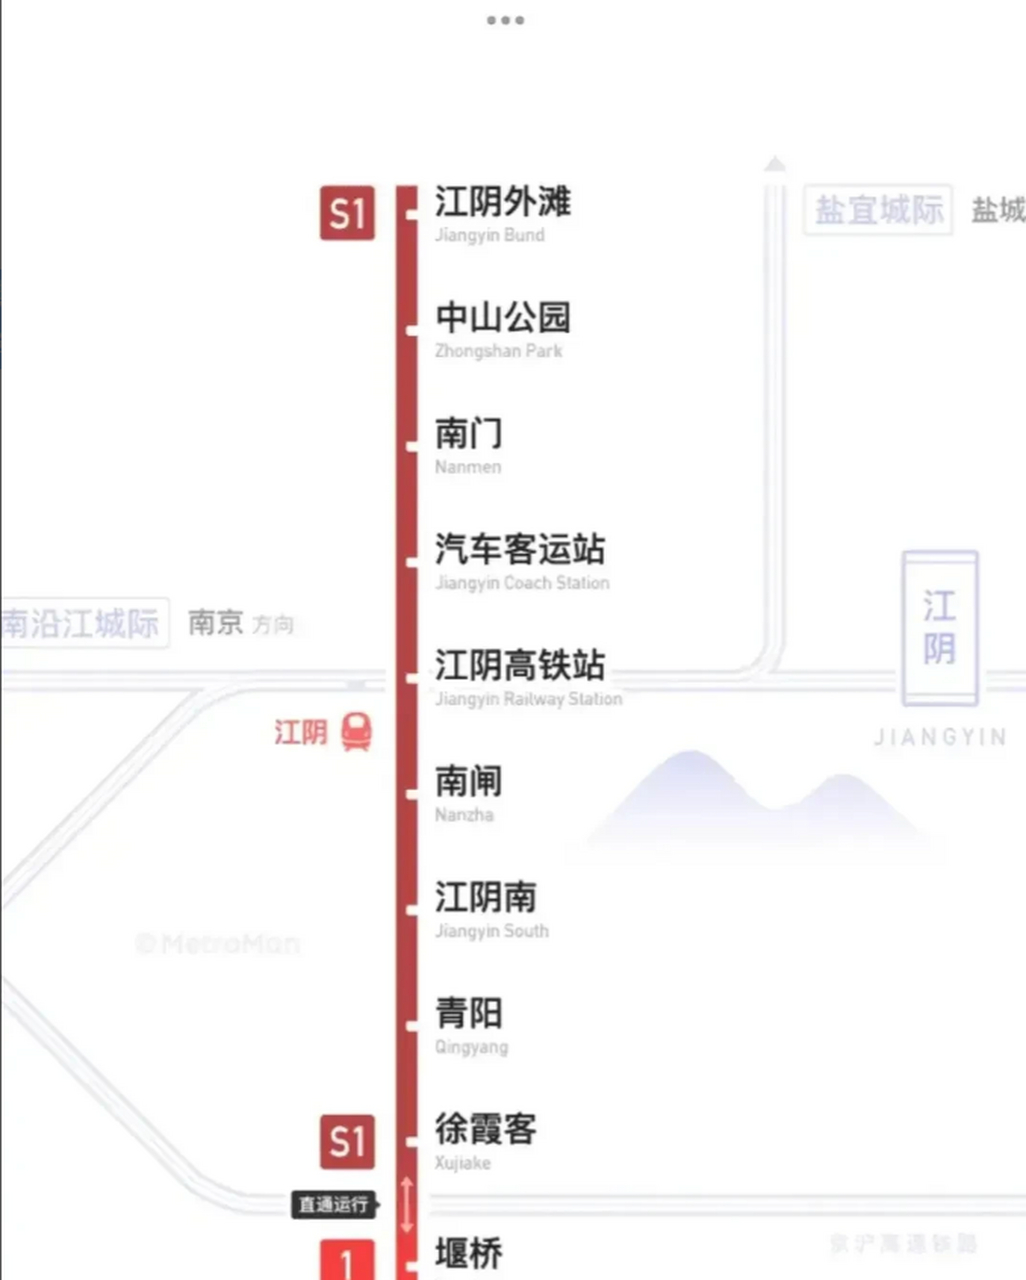 江阴地铁3号线线路图图片